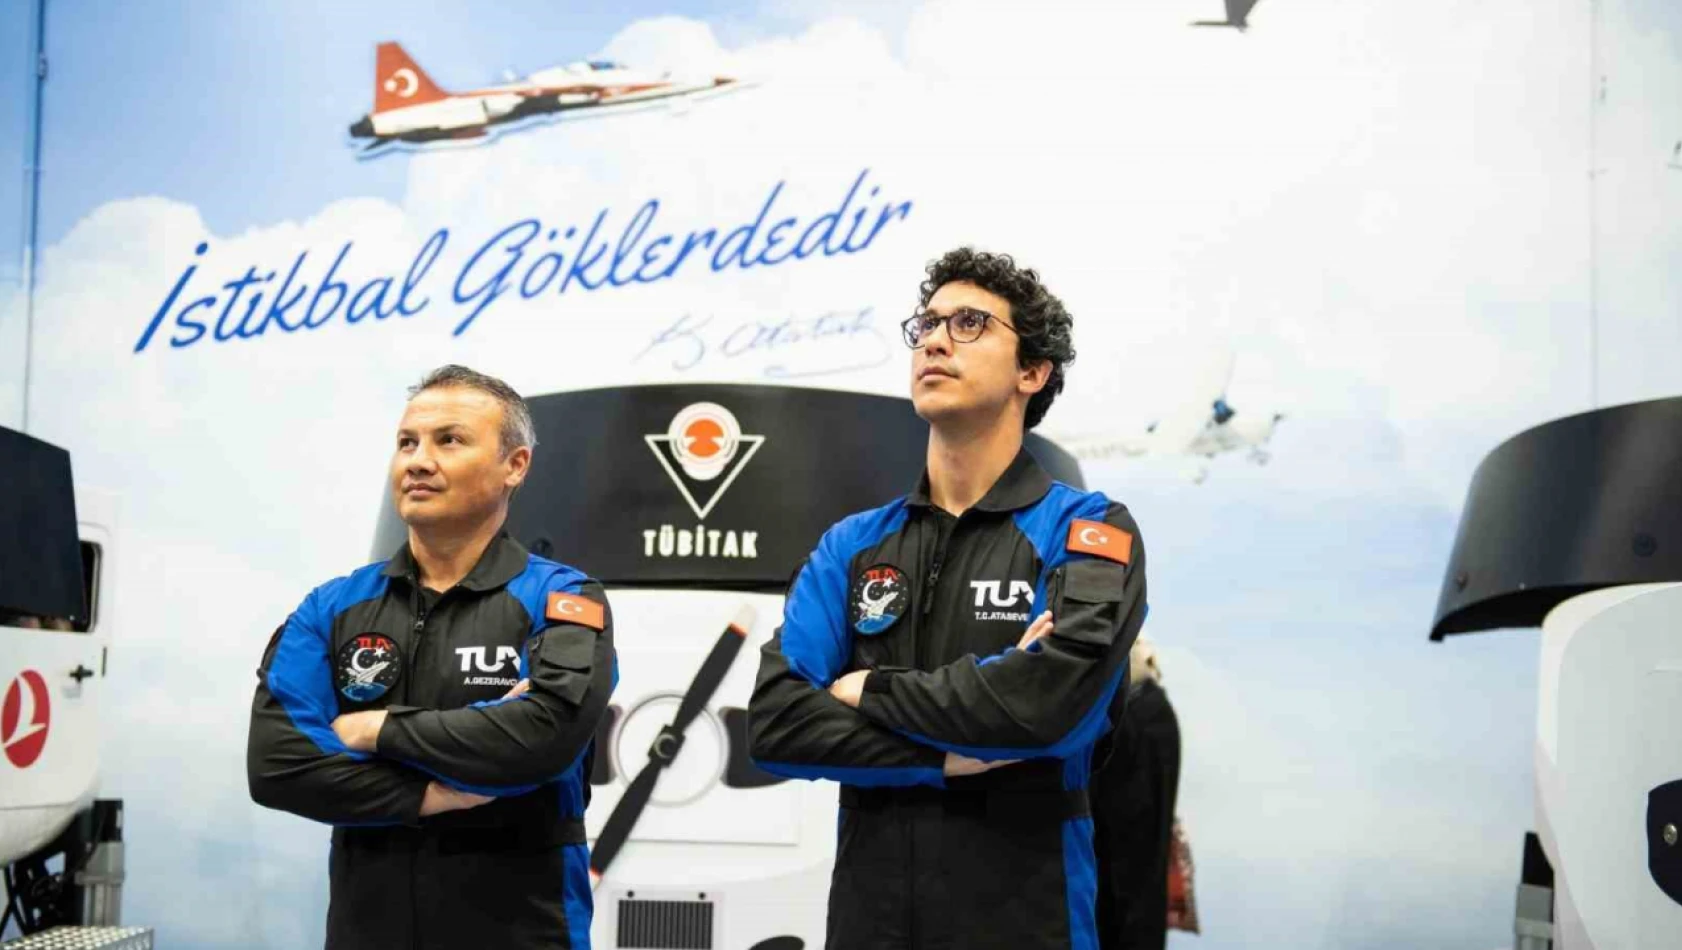 Türk Astronot Atasever 8 Haziran'da uzaya gidecek